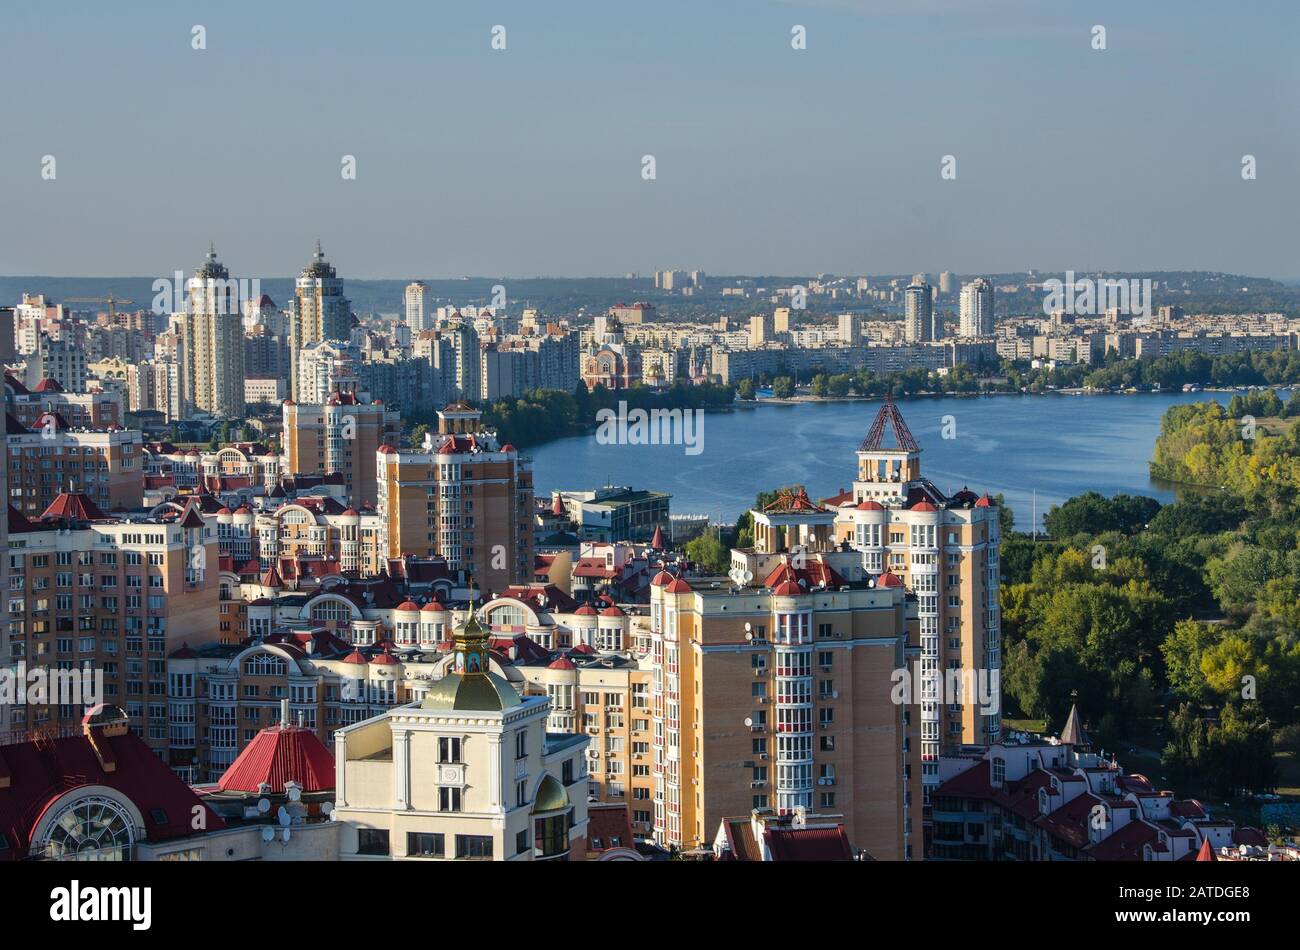 Vue aérienne sur la rivière Dnepr dans le quartier verdoyant d'Obolon de la ville de Kiev.Flying drone caméra shot.Magnifique nature sud-européenne en journée ensoleillée Banque D'Images